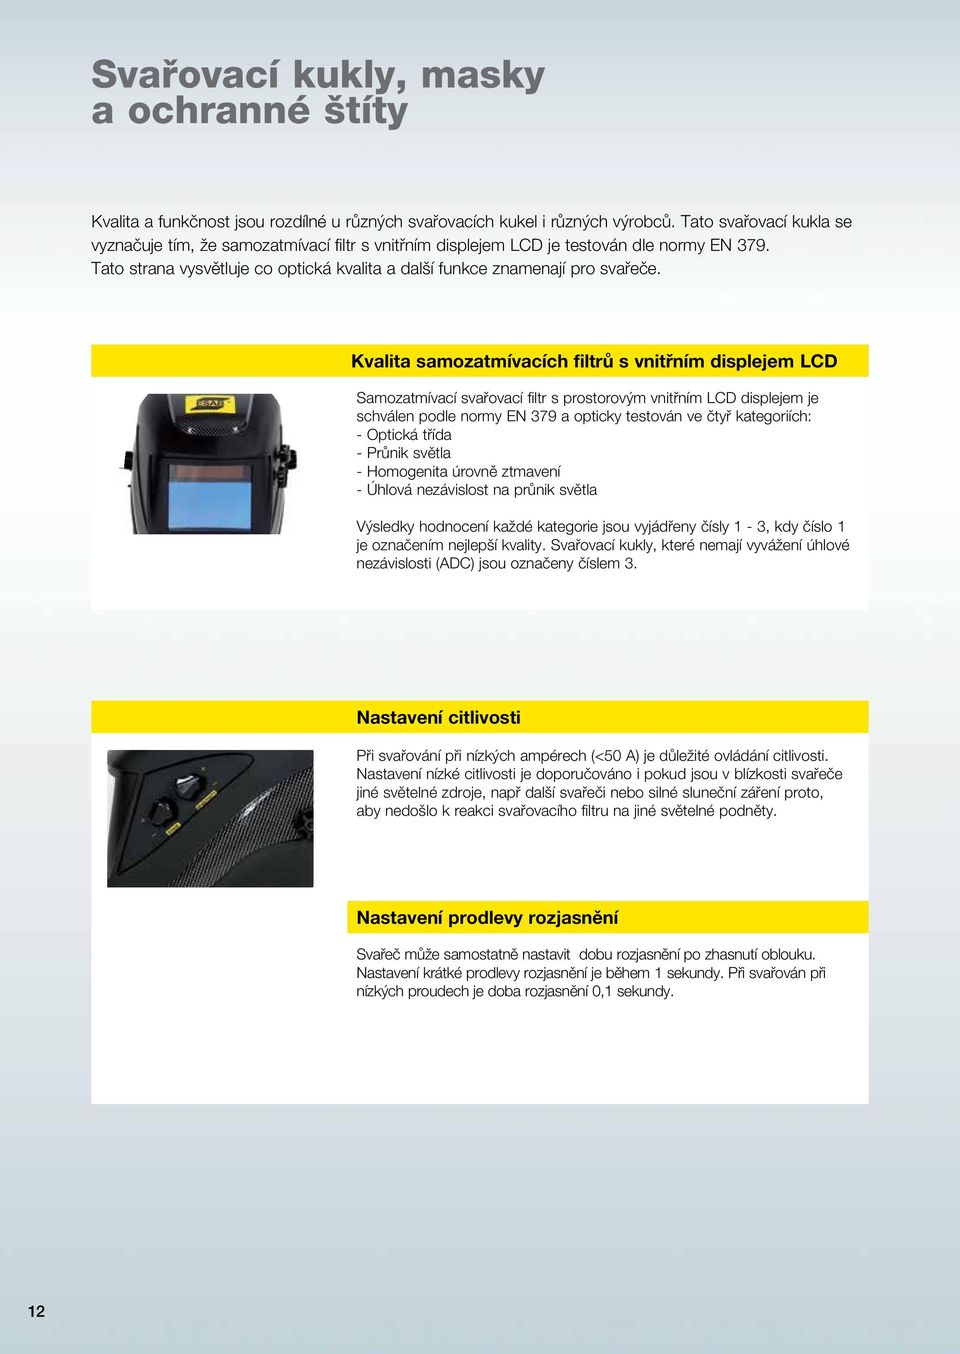 Kvalita samozatmívacích filtrů s vnitřním displejem LCD Samozatmívací svařovací filtr s prostorovým vnitřním LCD displejem je schválen podle normy EN 379 a opticky testován ve čtyř kategoriích: -